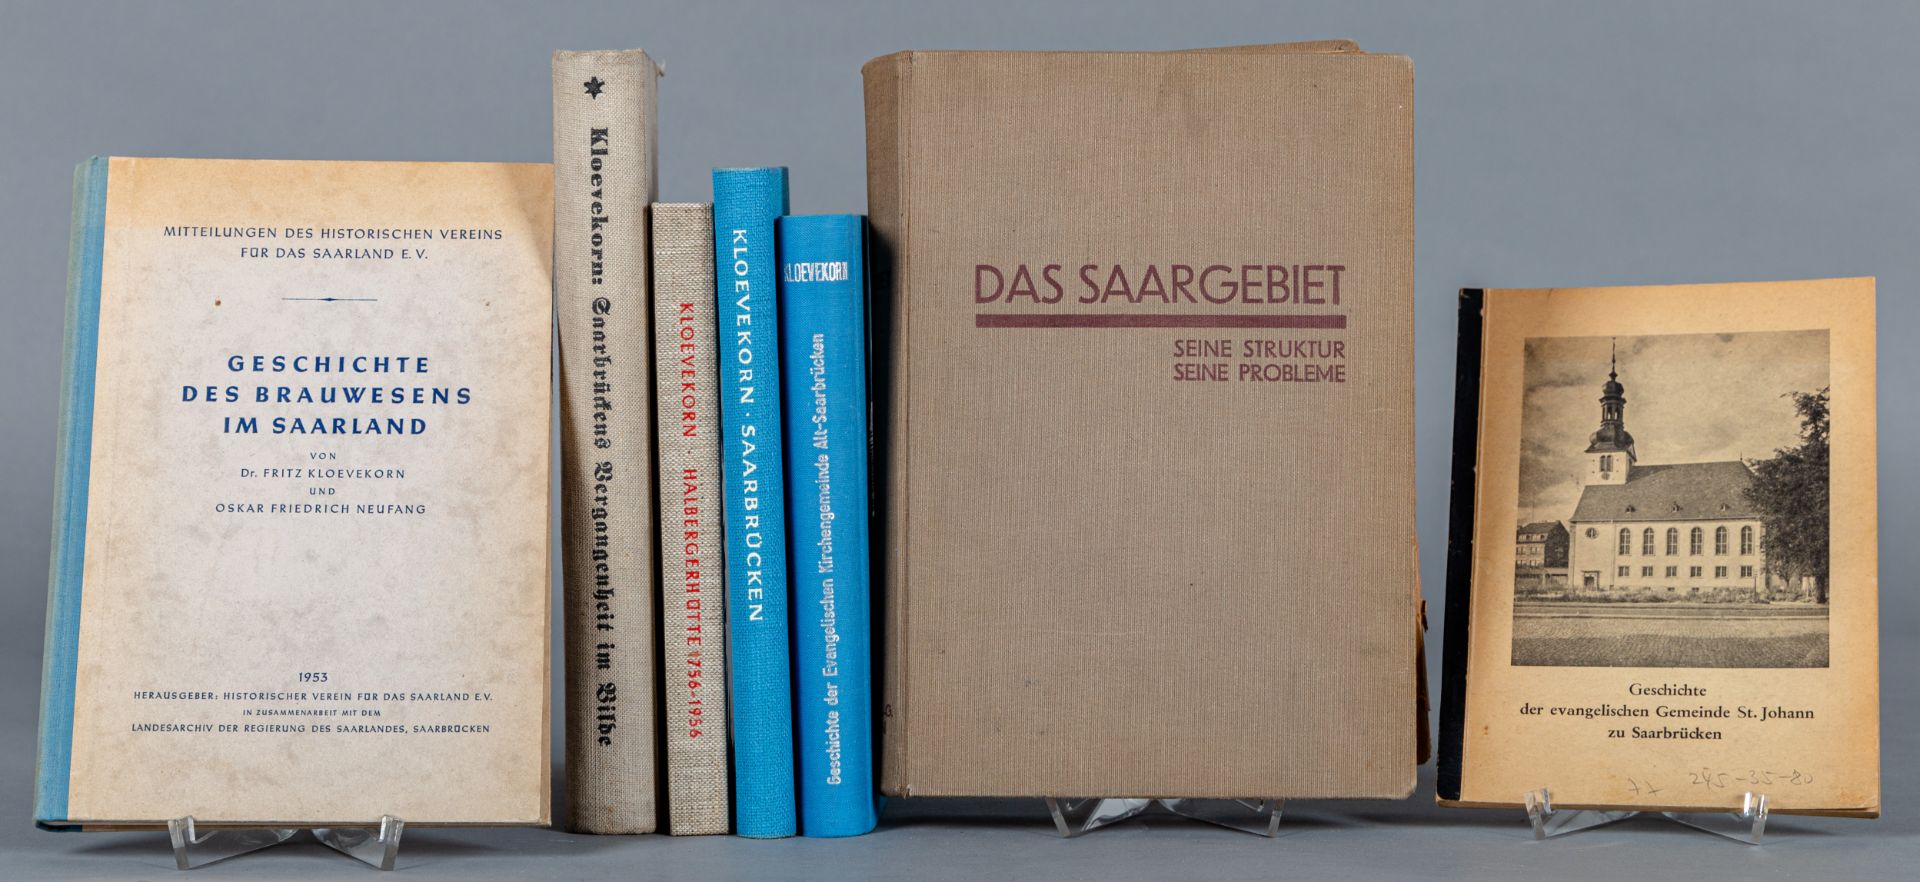 Fritz Kloevekorn (1885-1964), Bücher über die Geschichte des Saarlandes